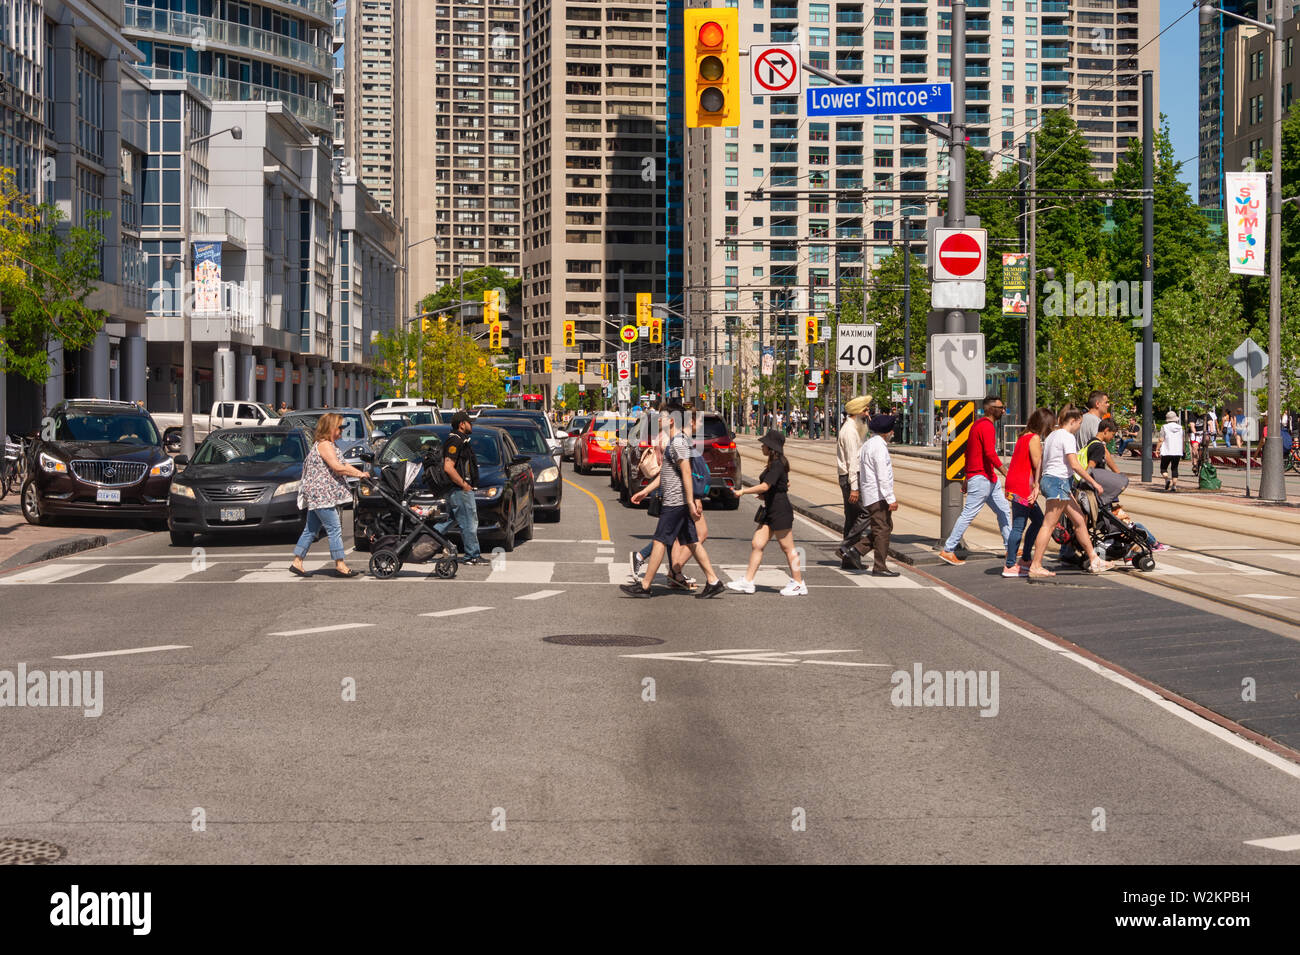 Toronto, Canada - 22 juin 2019 : une foule de personnes traversant Queens Quay W street dans le centre-ville de Toronto Banque D'Images